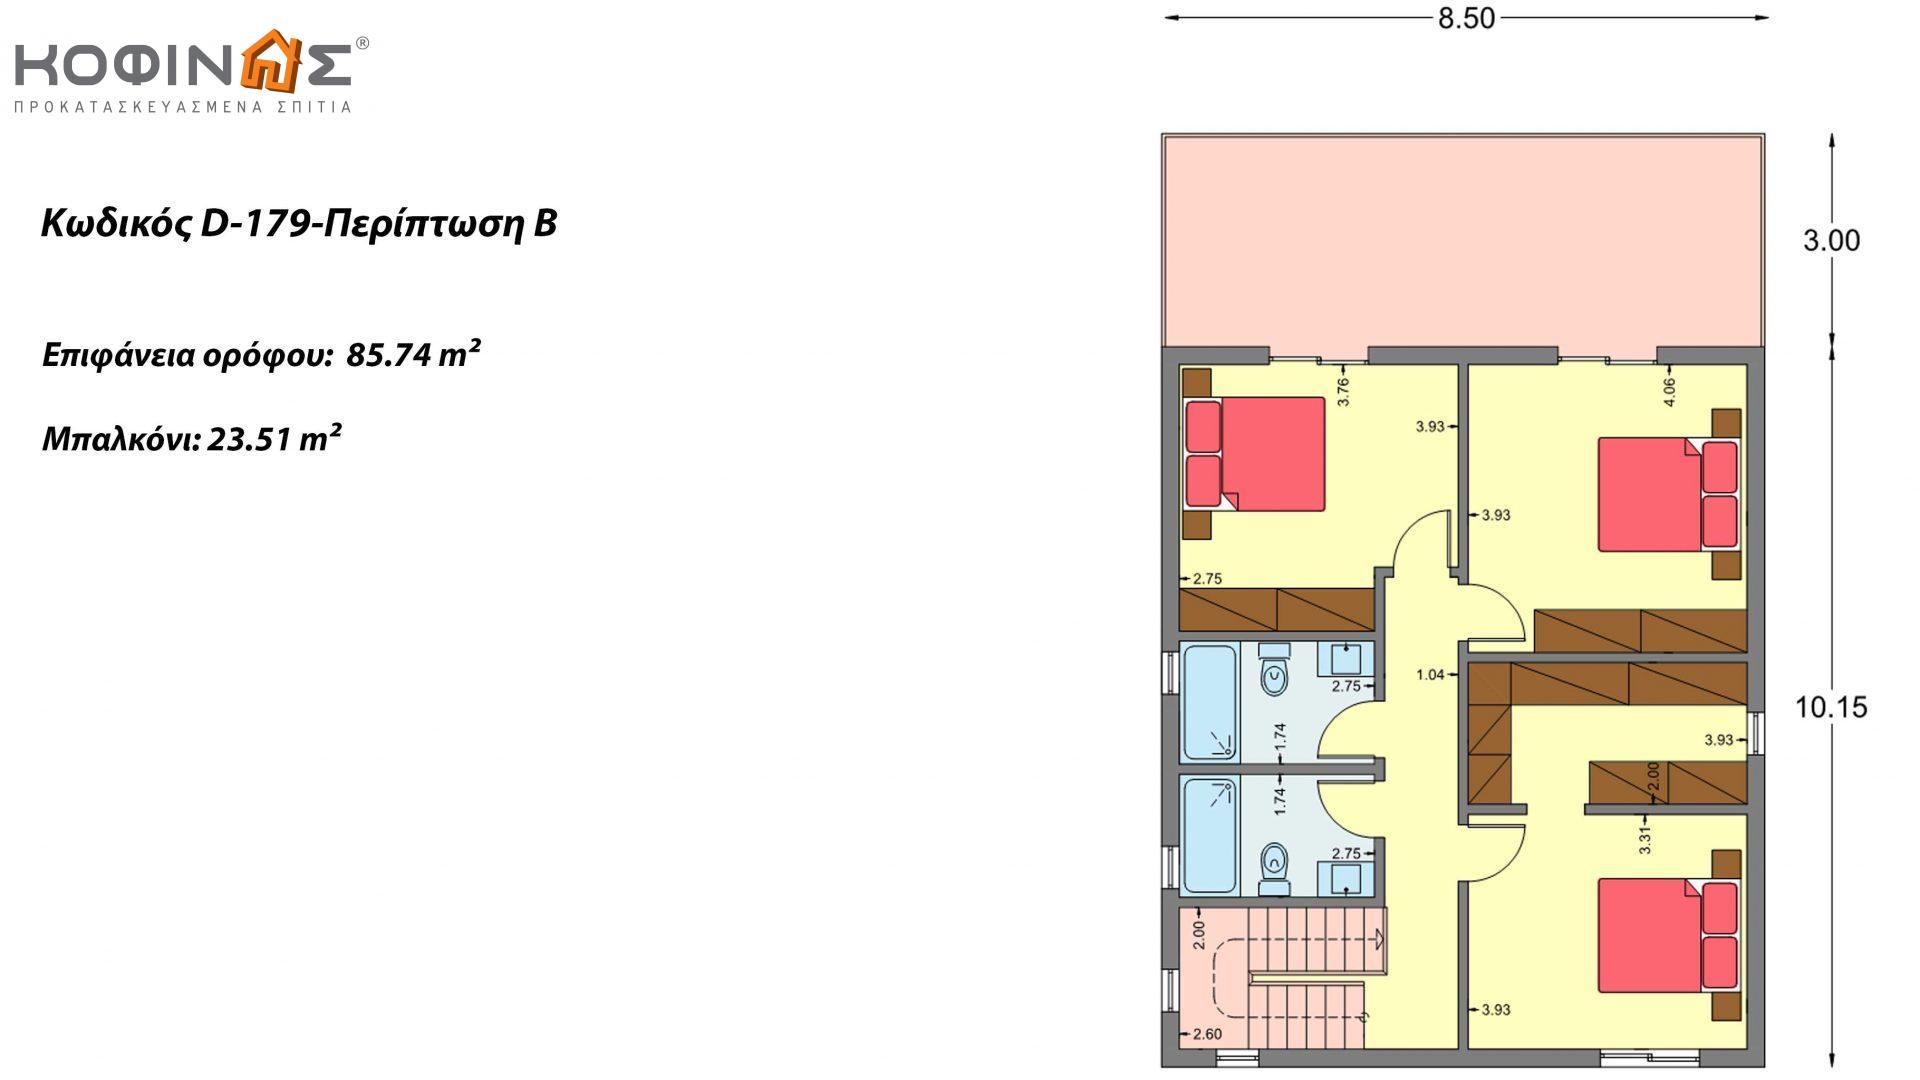 Διώροφη Κατοικία D-179, συνολικής επιφάνειας  179.38 τ.μ., +Γκαράζ 19.42 τ.μ. (=198.80 m²), συνολική επιφάνεια στεγασμένων χώρων 30.90 τ.μ., μπαλκόνια 23.51 m²